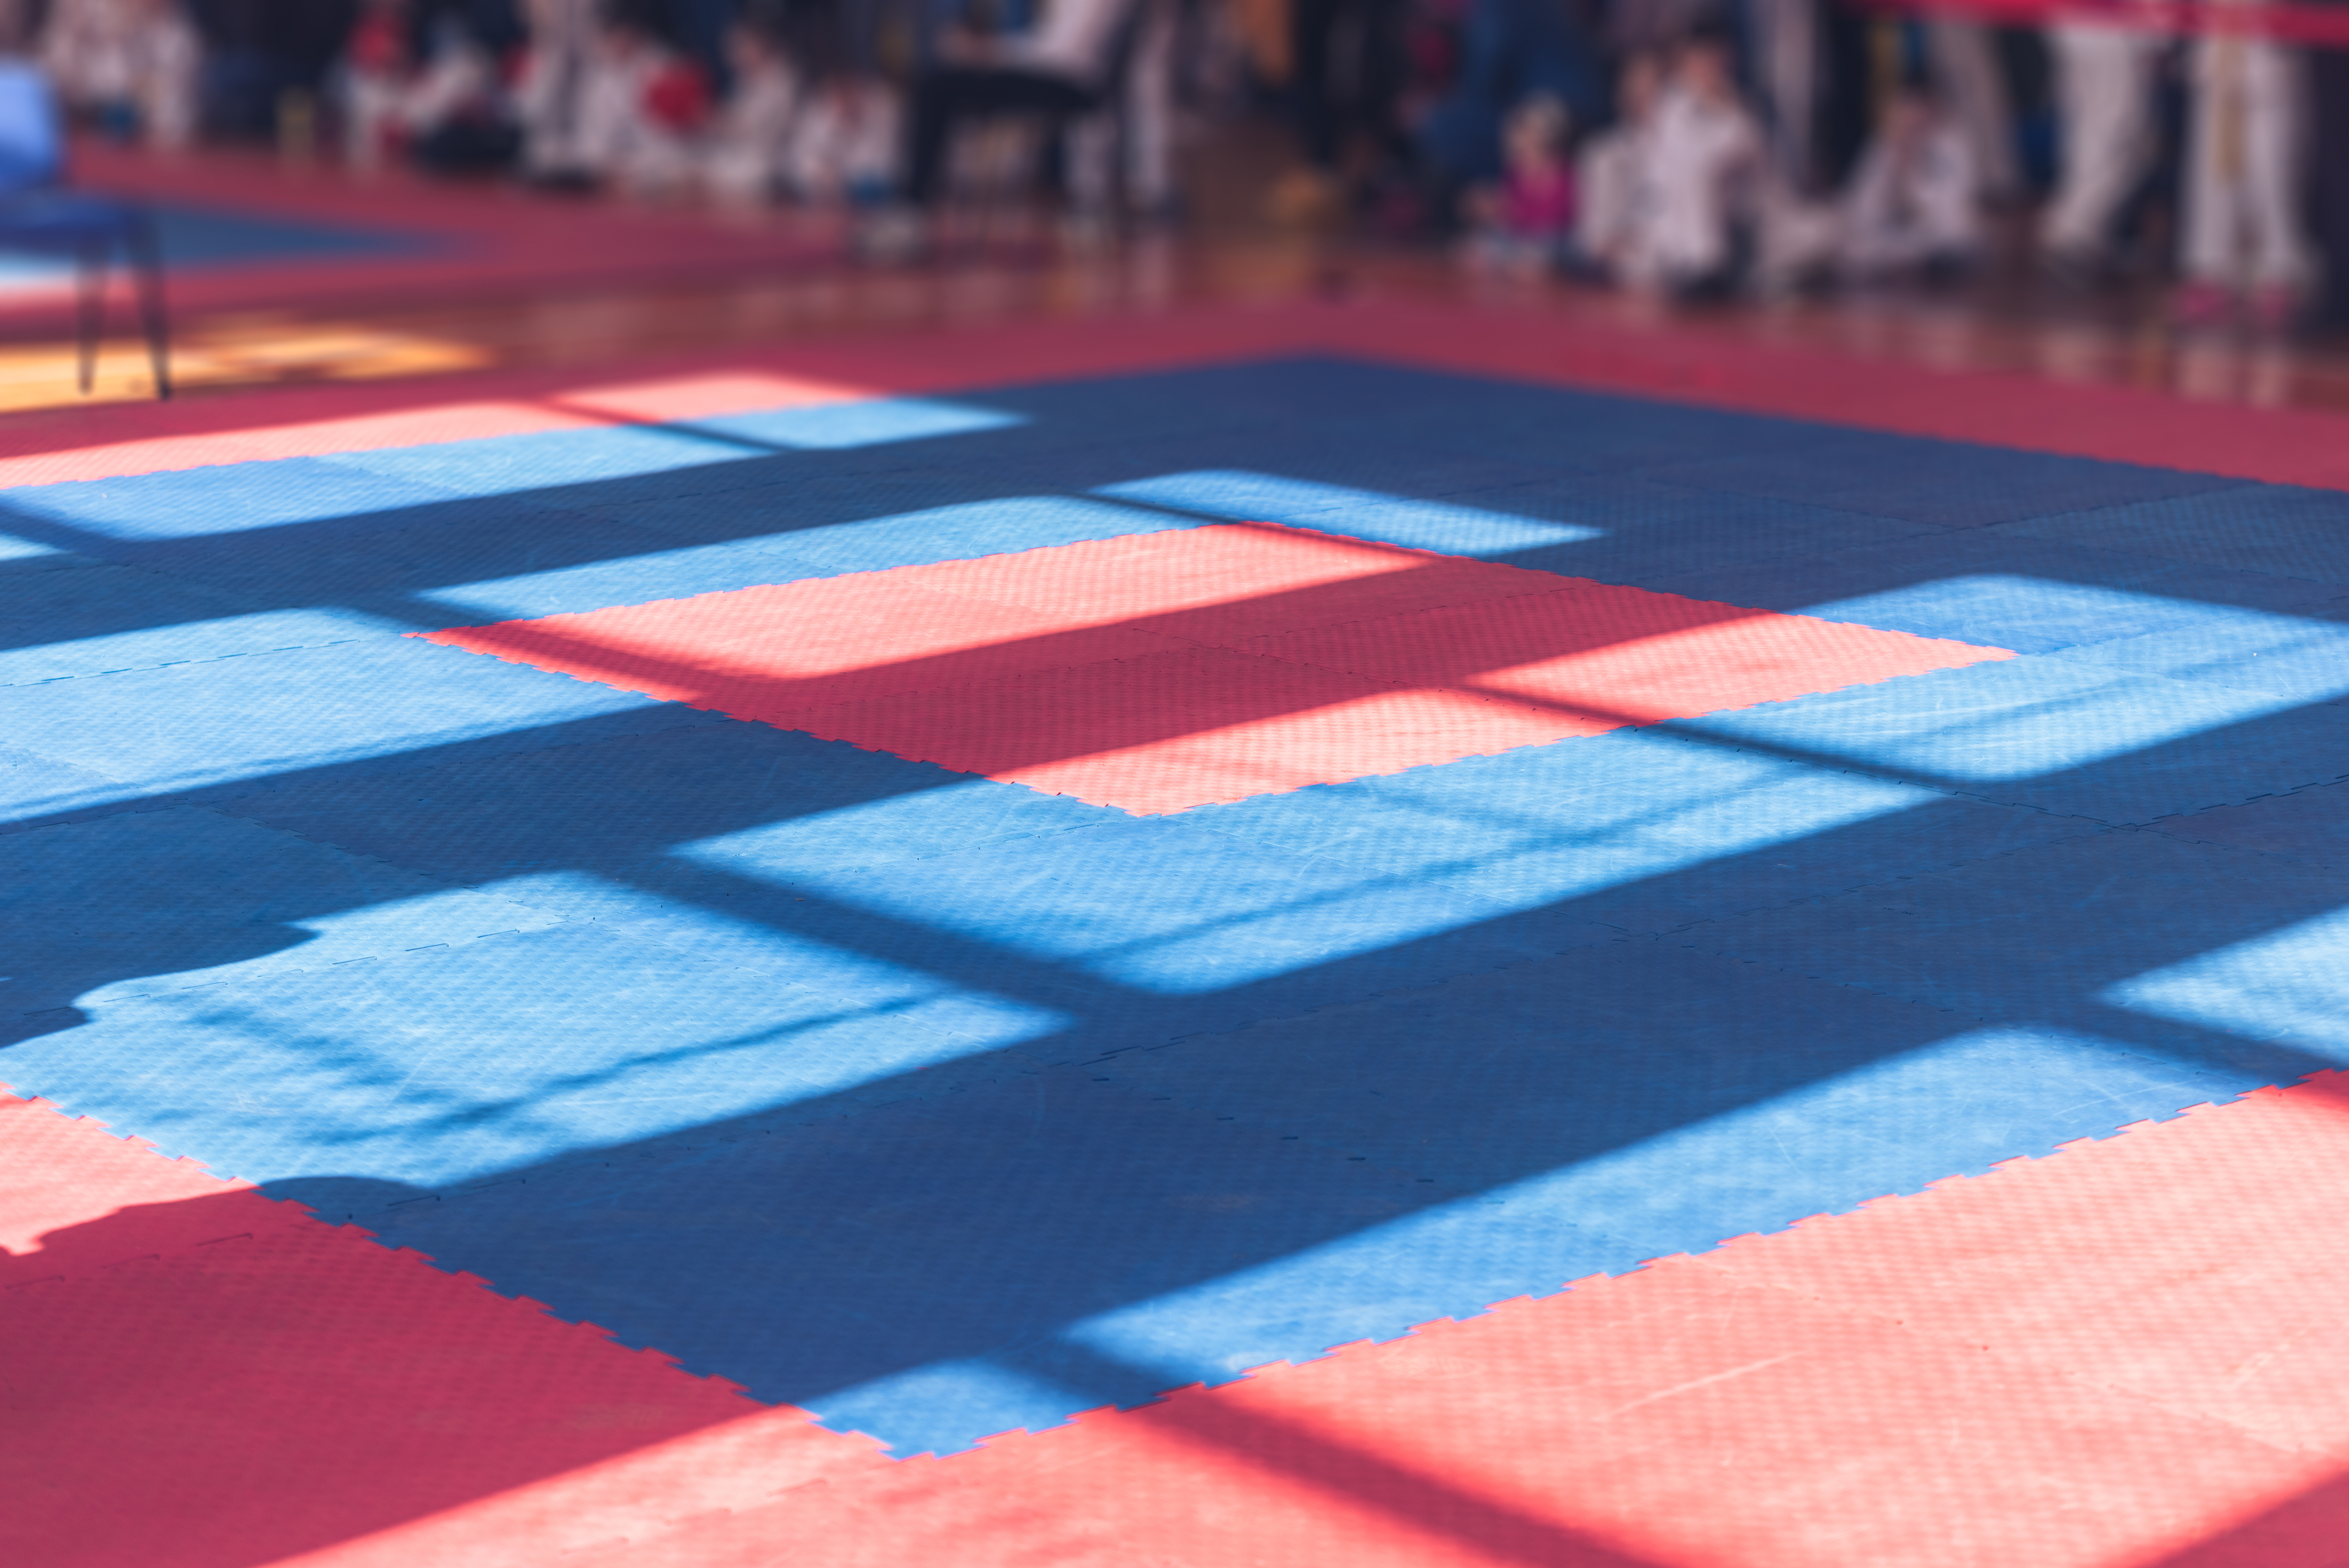 Soft mat floors of a martial arts dojo